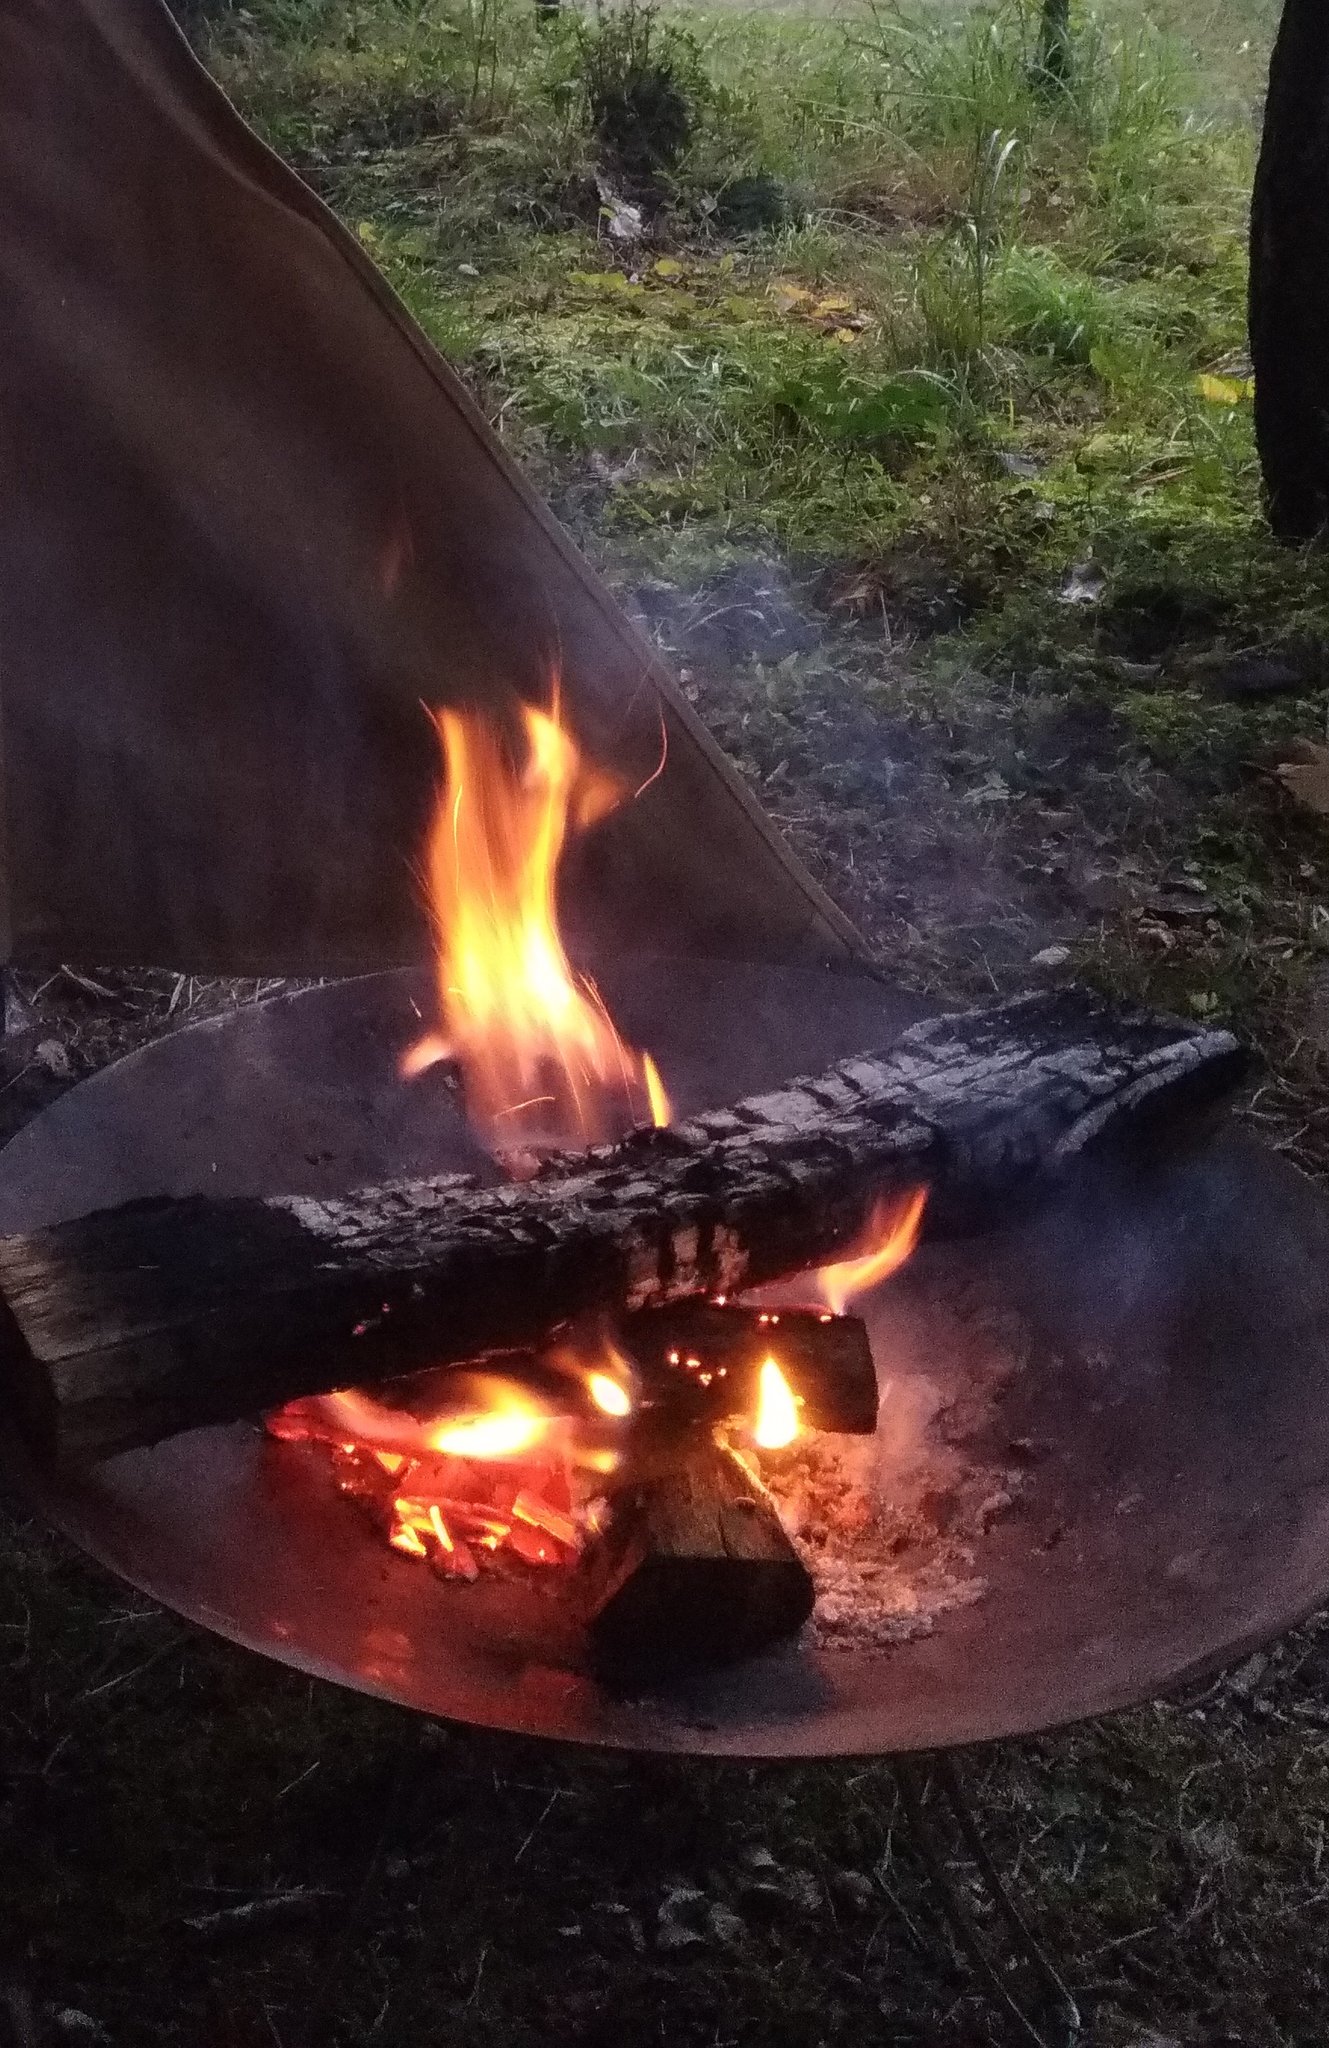 تويتر けけだ キャンプ على تويتر 冬の焚き火はファイヤーディスクがいいですね 調理はディスクが高熱になるので 乗せとくだけでokだし ほぼ燃え尽きて 後片付けも簡単でした キャンプ コールマン ファイヤーディスク 焚き火 T Co 2m7k36yksg